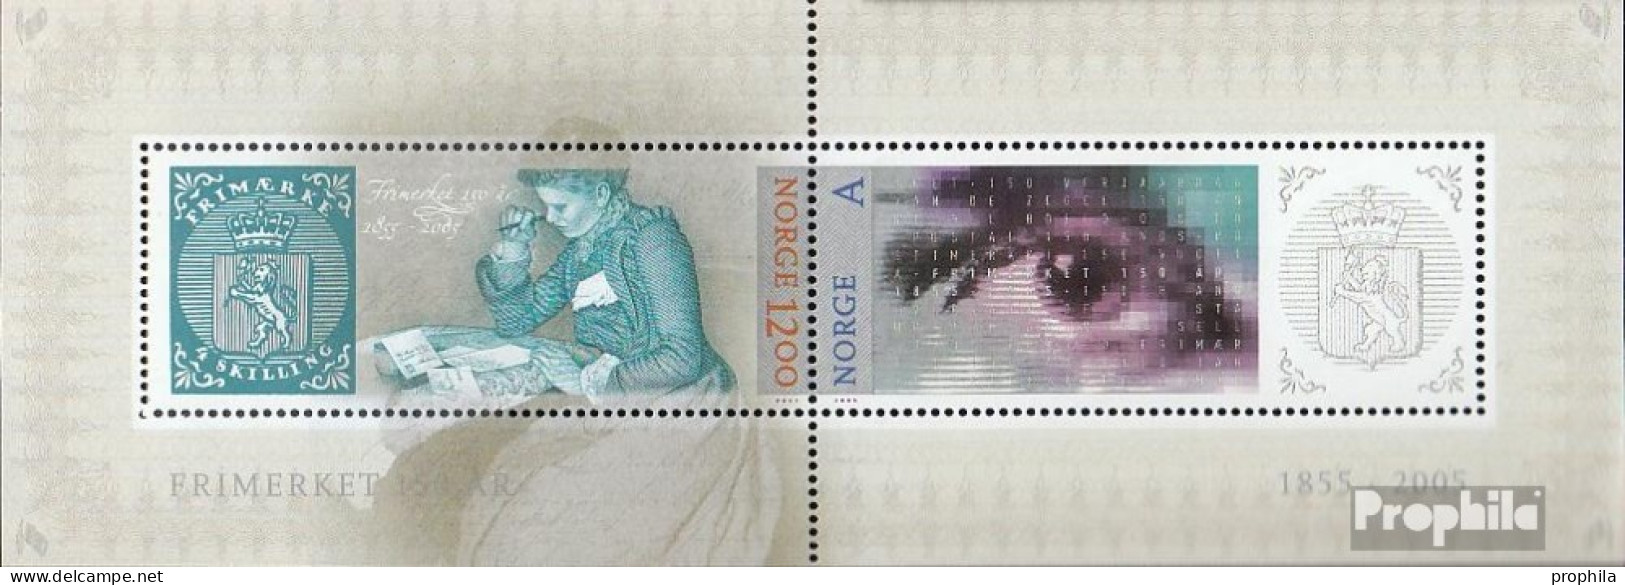 Norwegen Block29 (kompl.Ausg.) Postfrisch 2005 Norwegische Briefmarke - Neufs